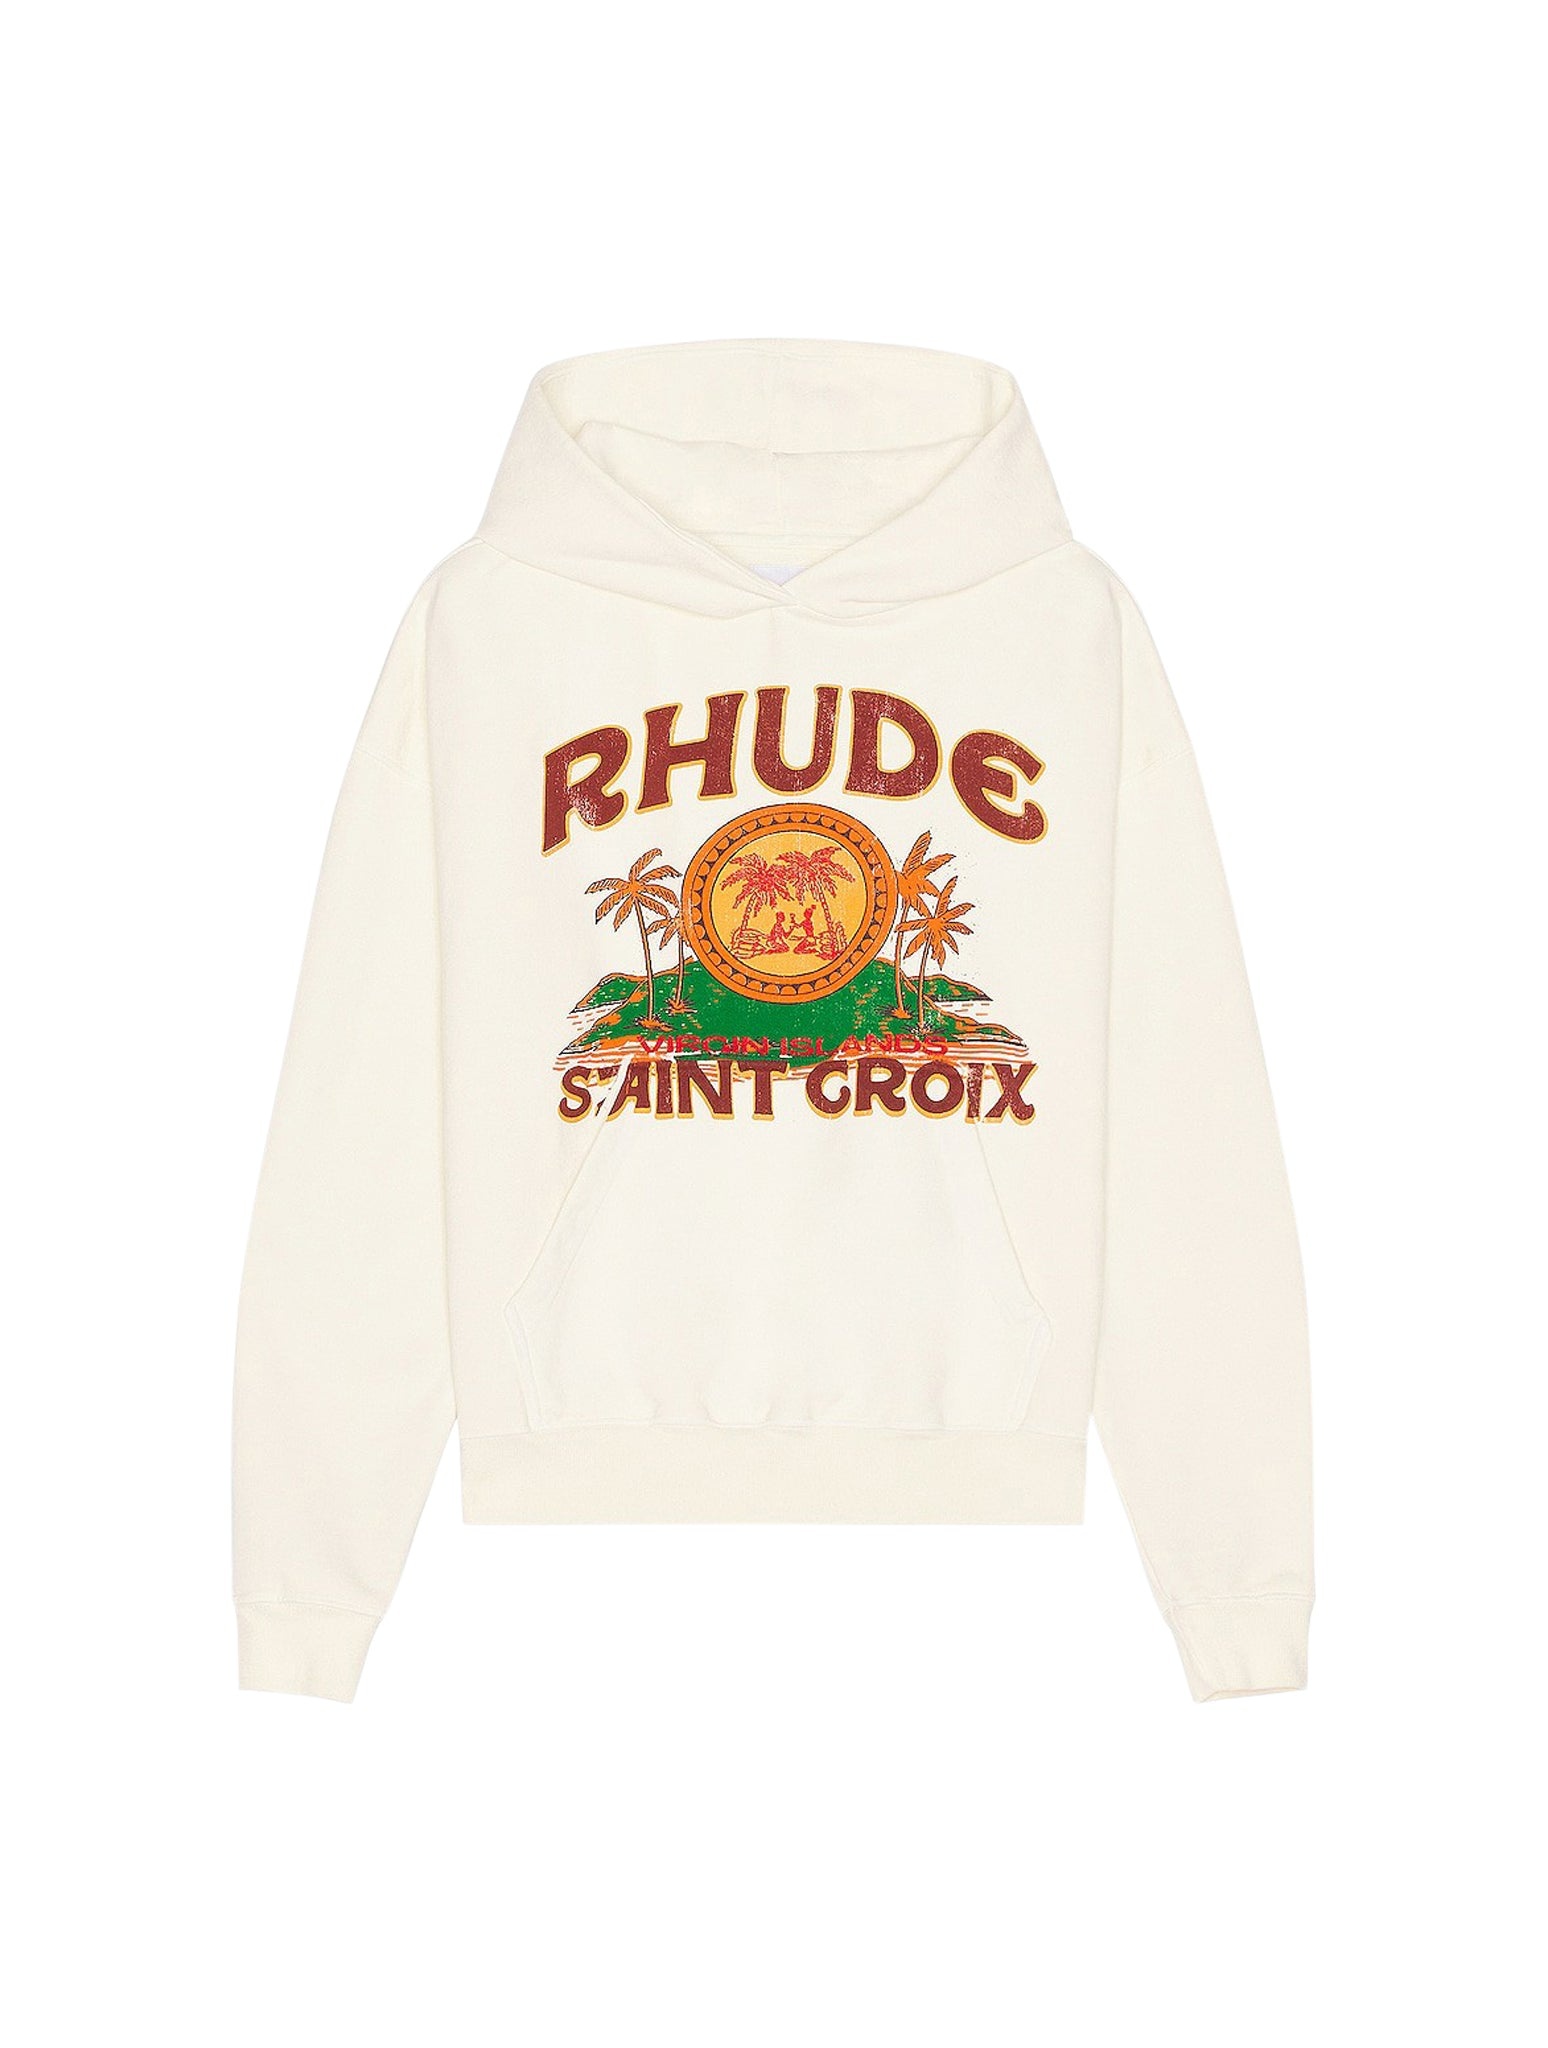 RHUDE ST. CROIX HOODIE - 1